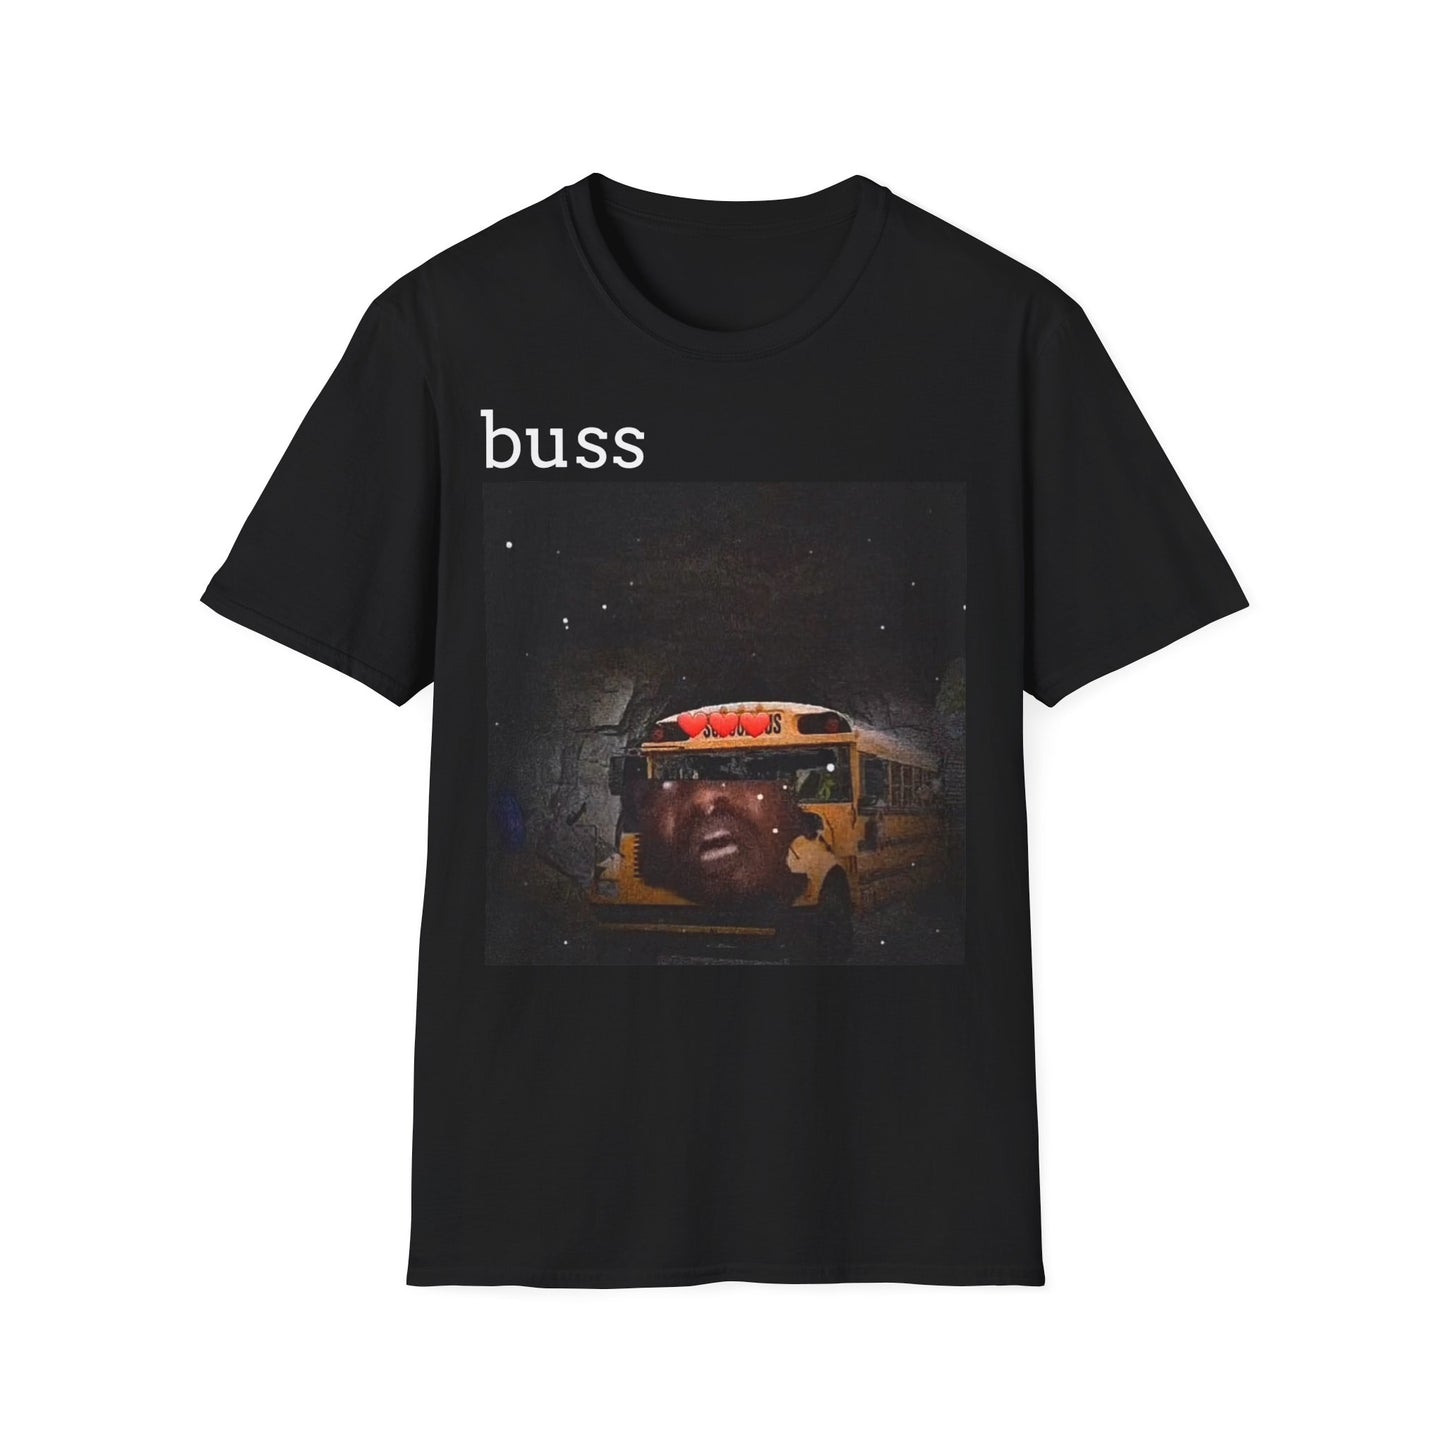 Buss shirt